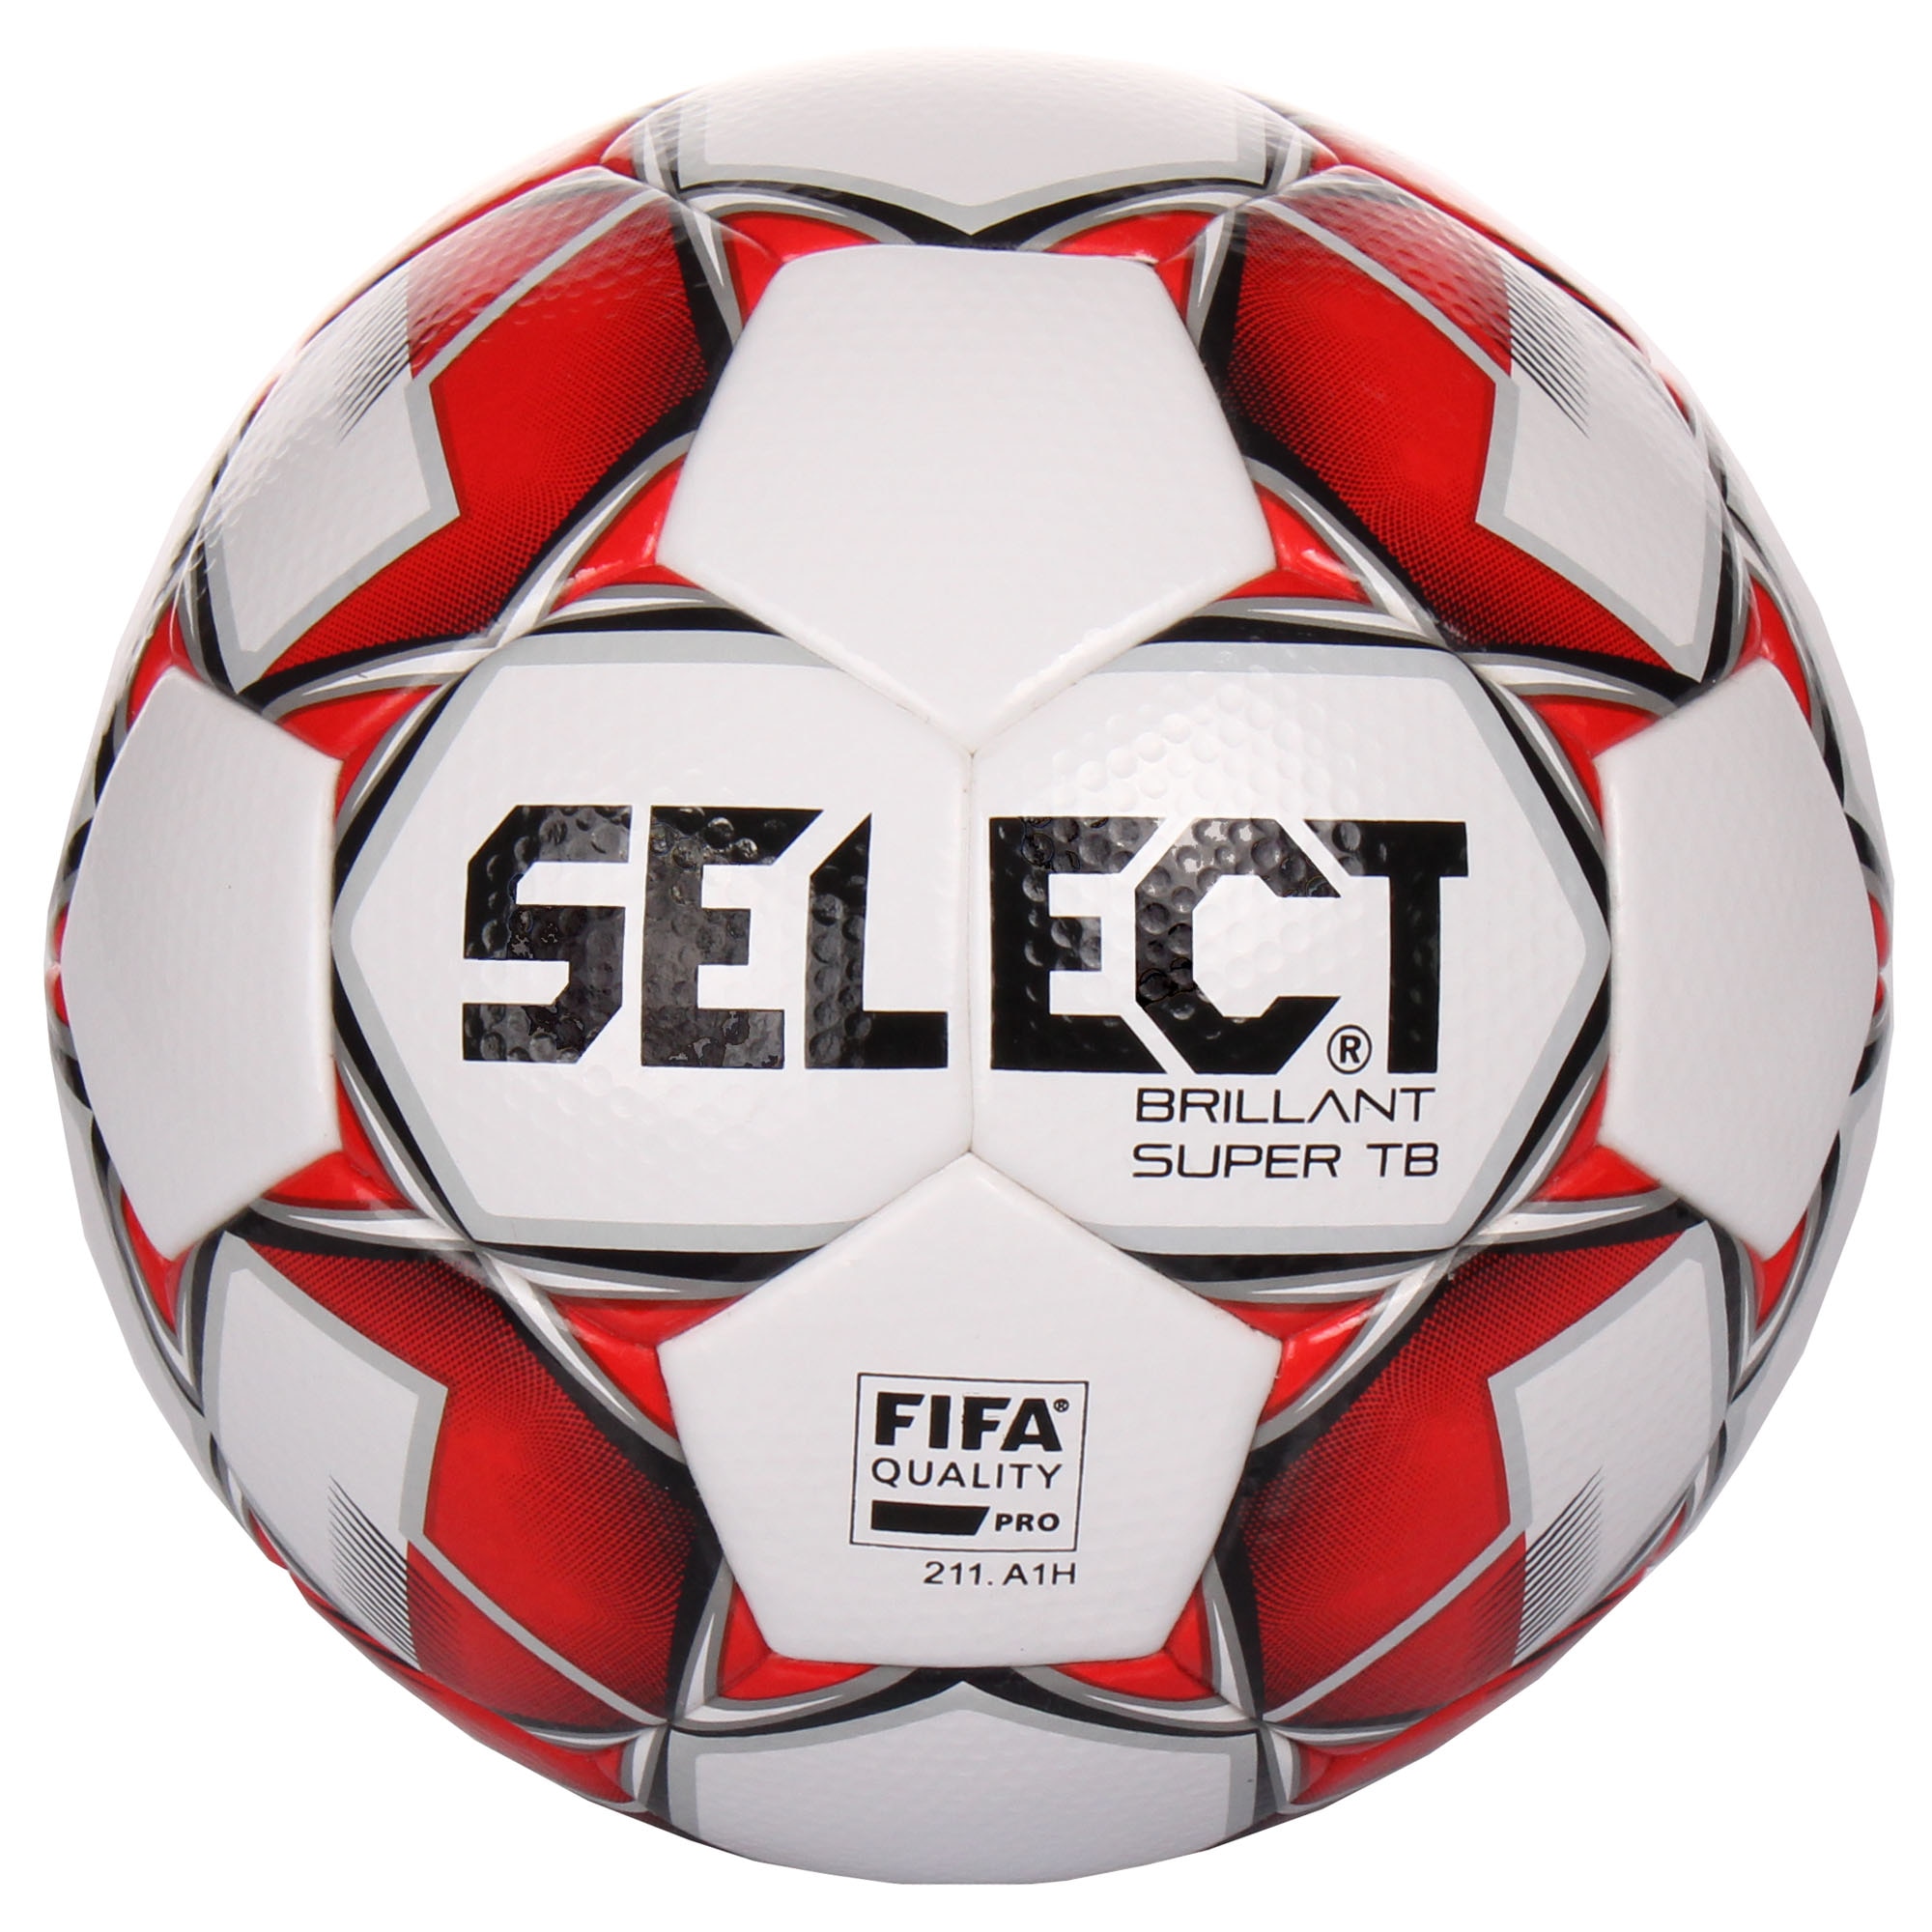 Футбольный мяч select. Футбольный мяч select brillant super TB FIFA 810316. Select мяч FIFA brillant super Brilliant. Футбольный мяч select brillant super FIFA 211.a1a.